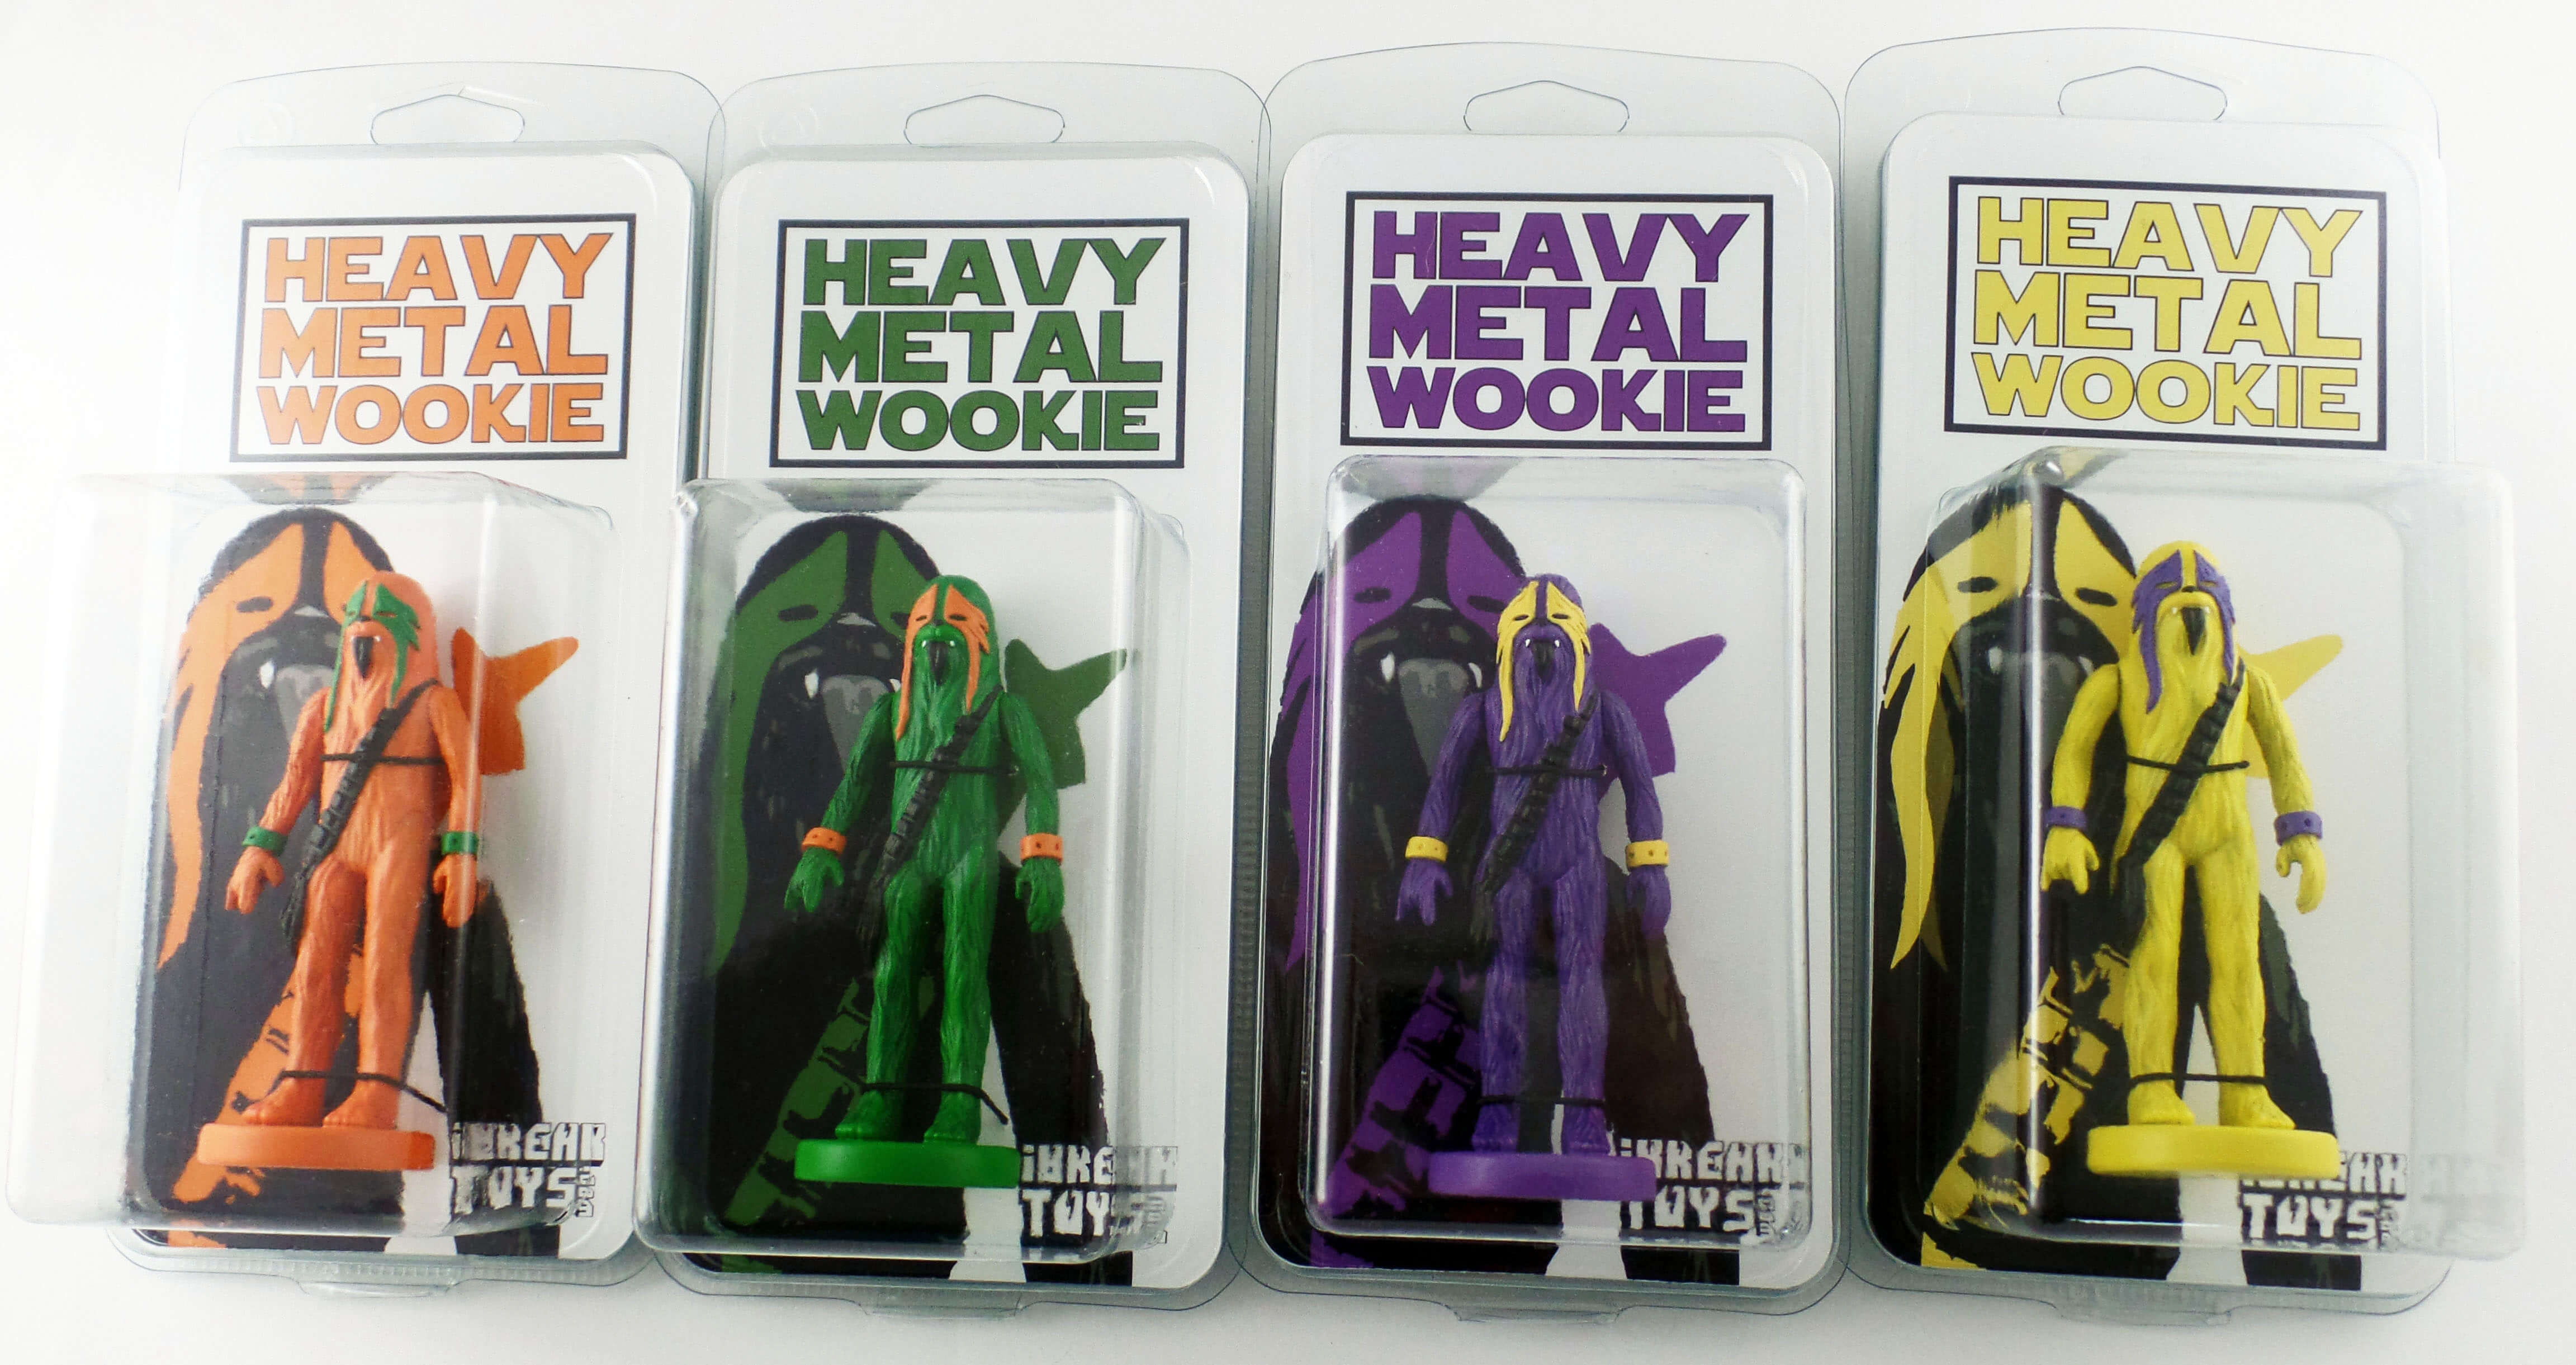 Heavy Metal Wookie Packaging